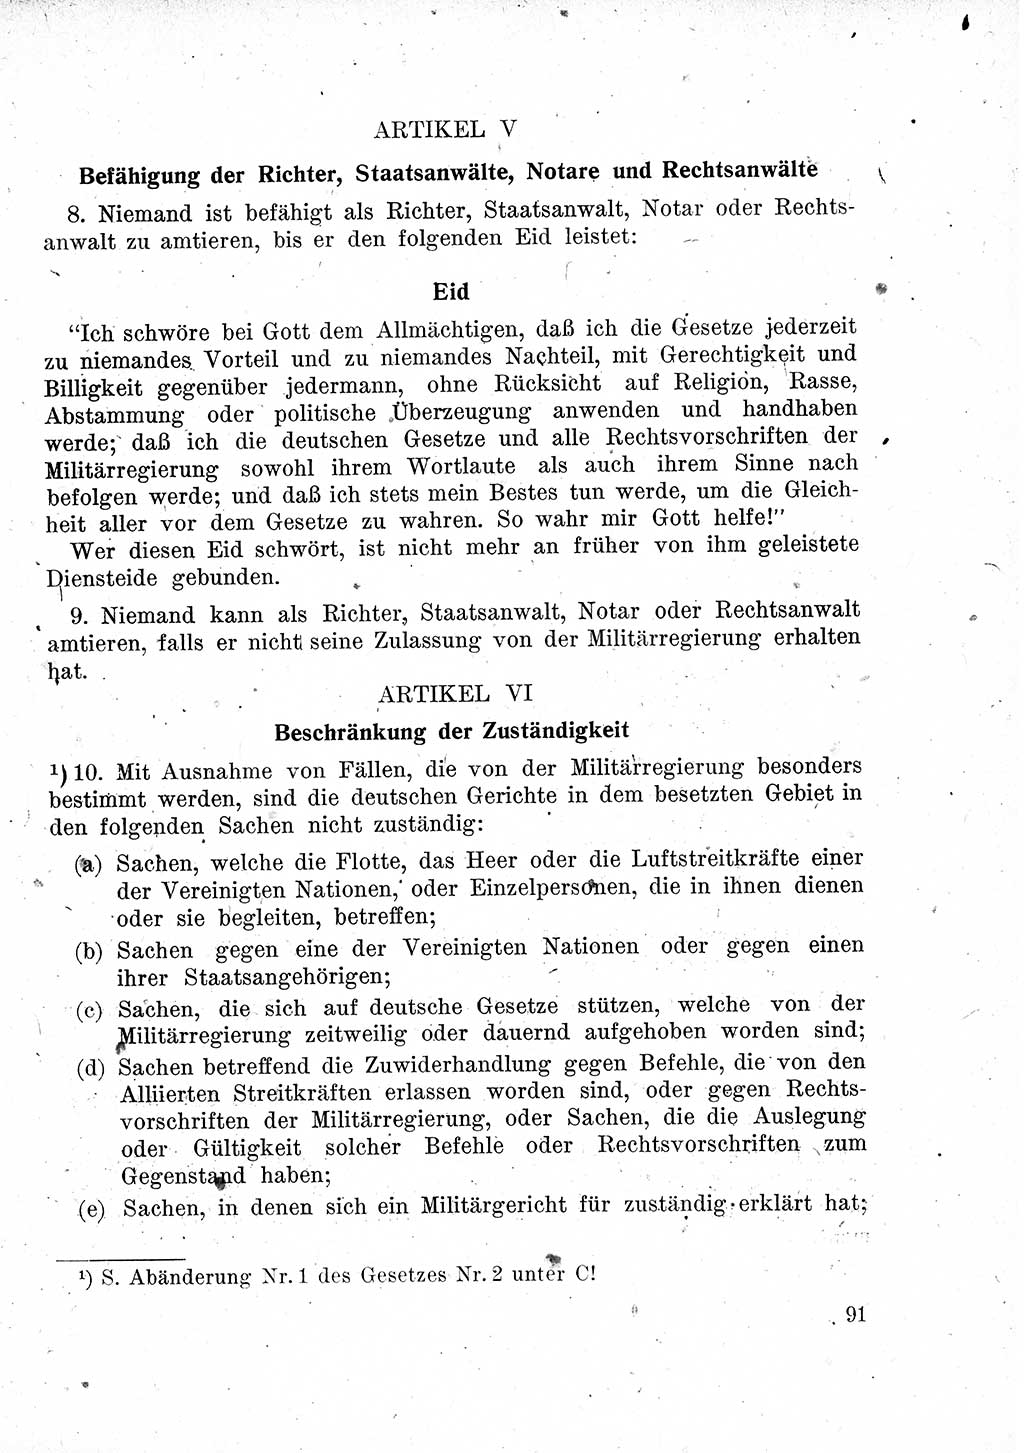 Das Recht der Besatzungsmacht (Deutschland), Proklamationen, Deklerationen, Verordnungen, Gesetze und Bekanntmachungen 1947, Seite 91 (R. Bes. Dtl. 1947, S. 91)